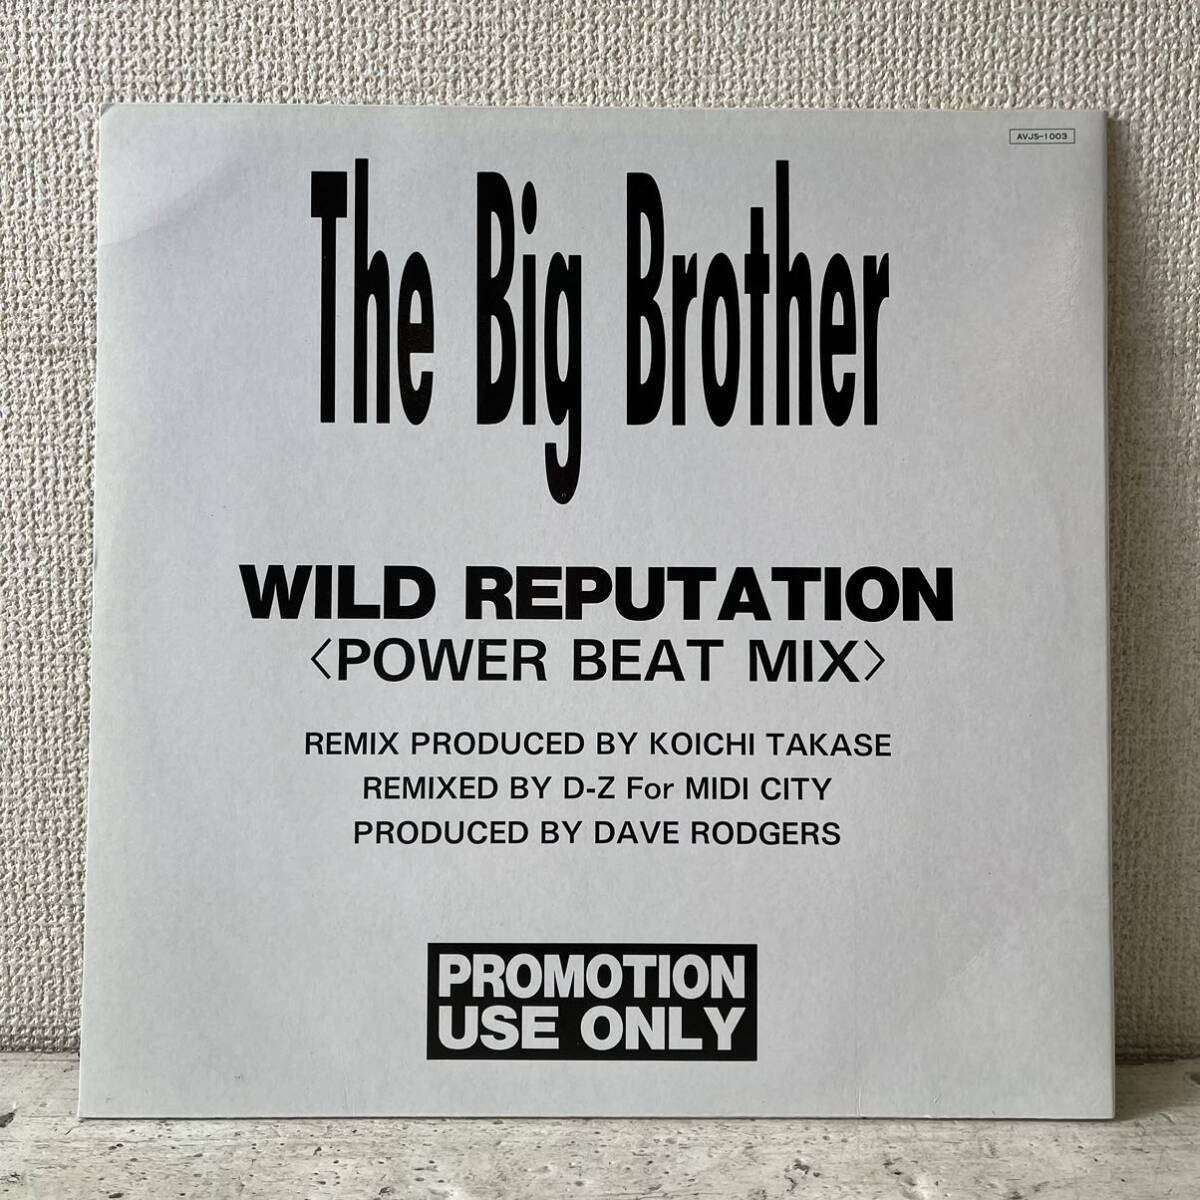 12 レコード / The Big Brother / Wild Requtation ( Power Beat Mix ) / AVJS-1003 _画像2